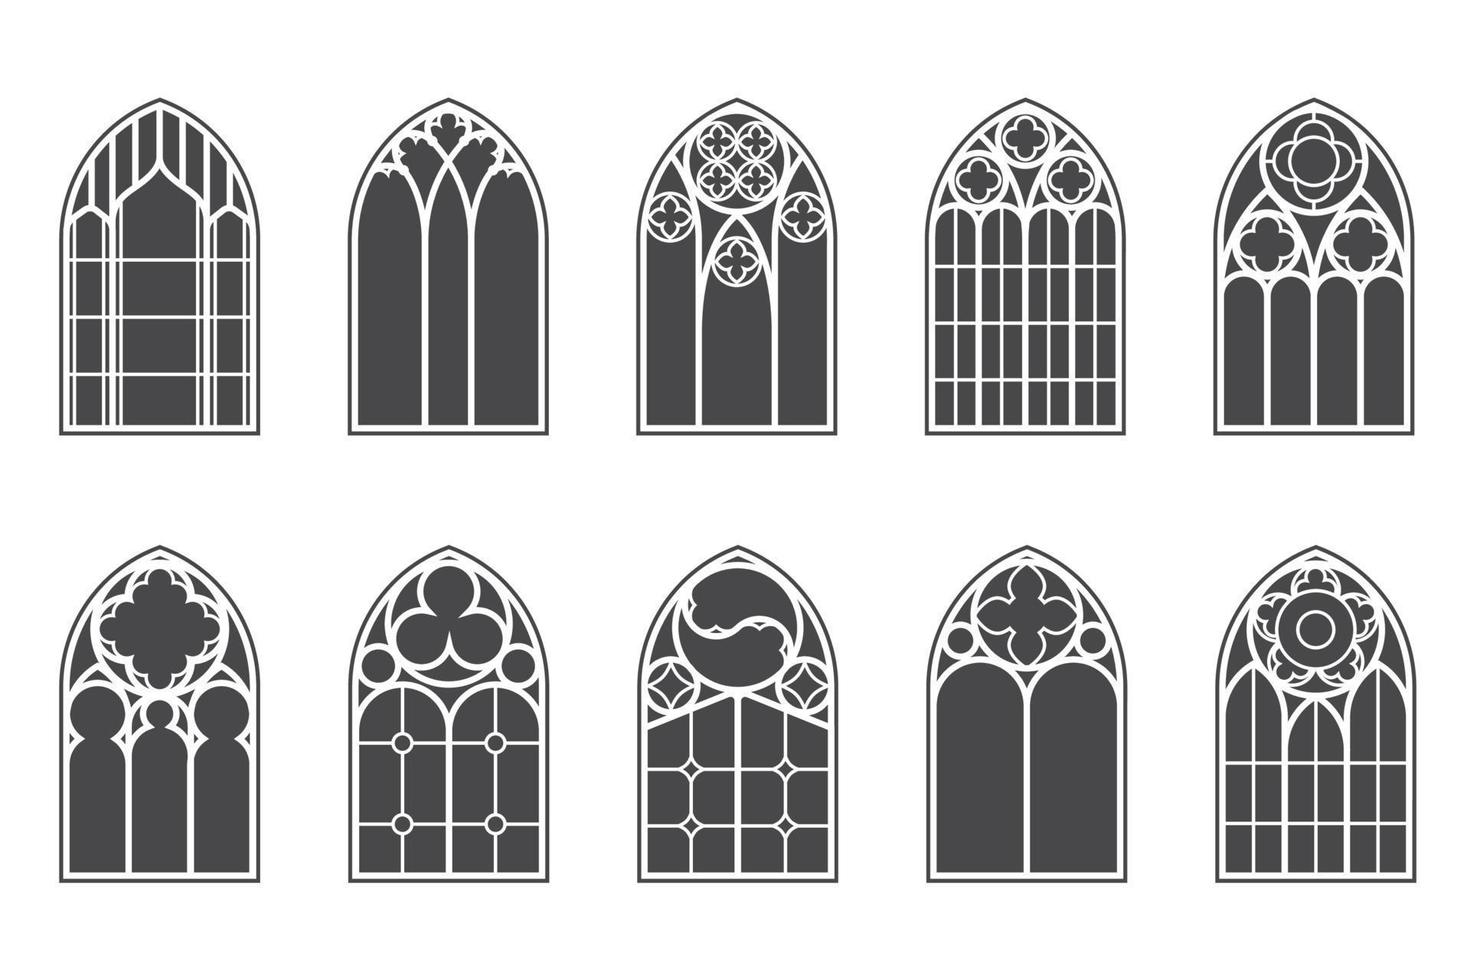 mittelalterliche fenster der kirche gesetzt. alte gotische architekturelemente. Vektor-Glyphen-Illustration auf weißem Hintergrund. vektor